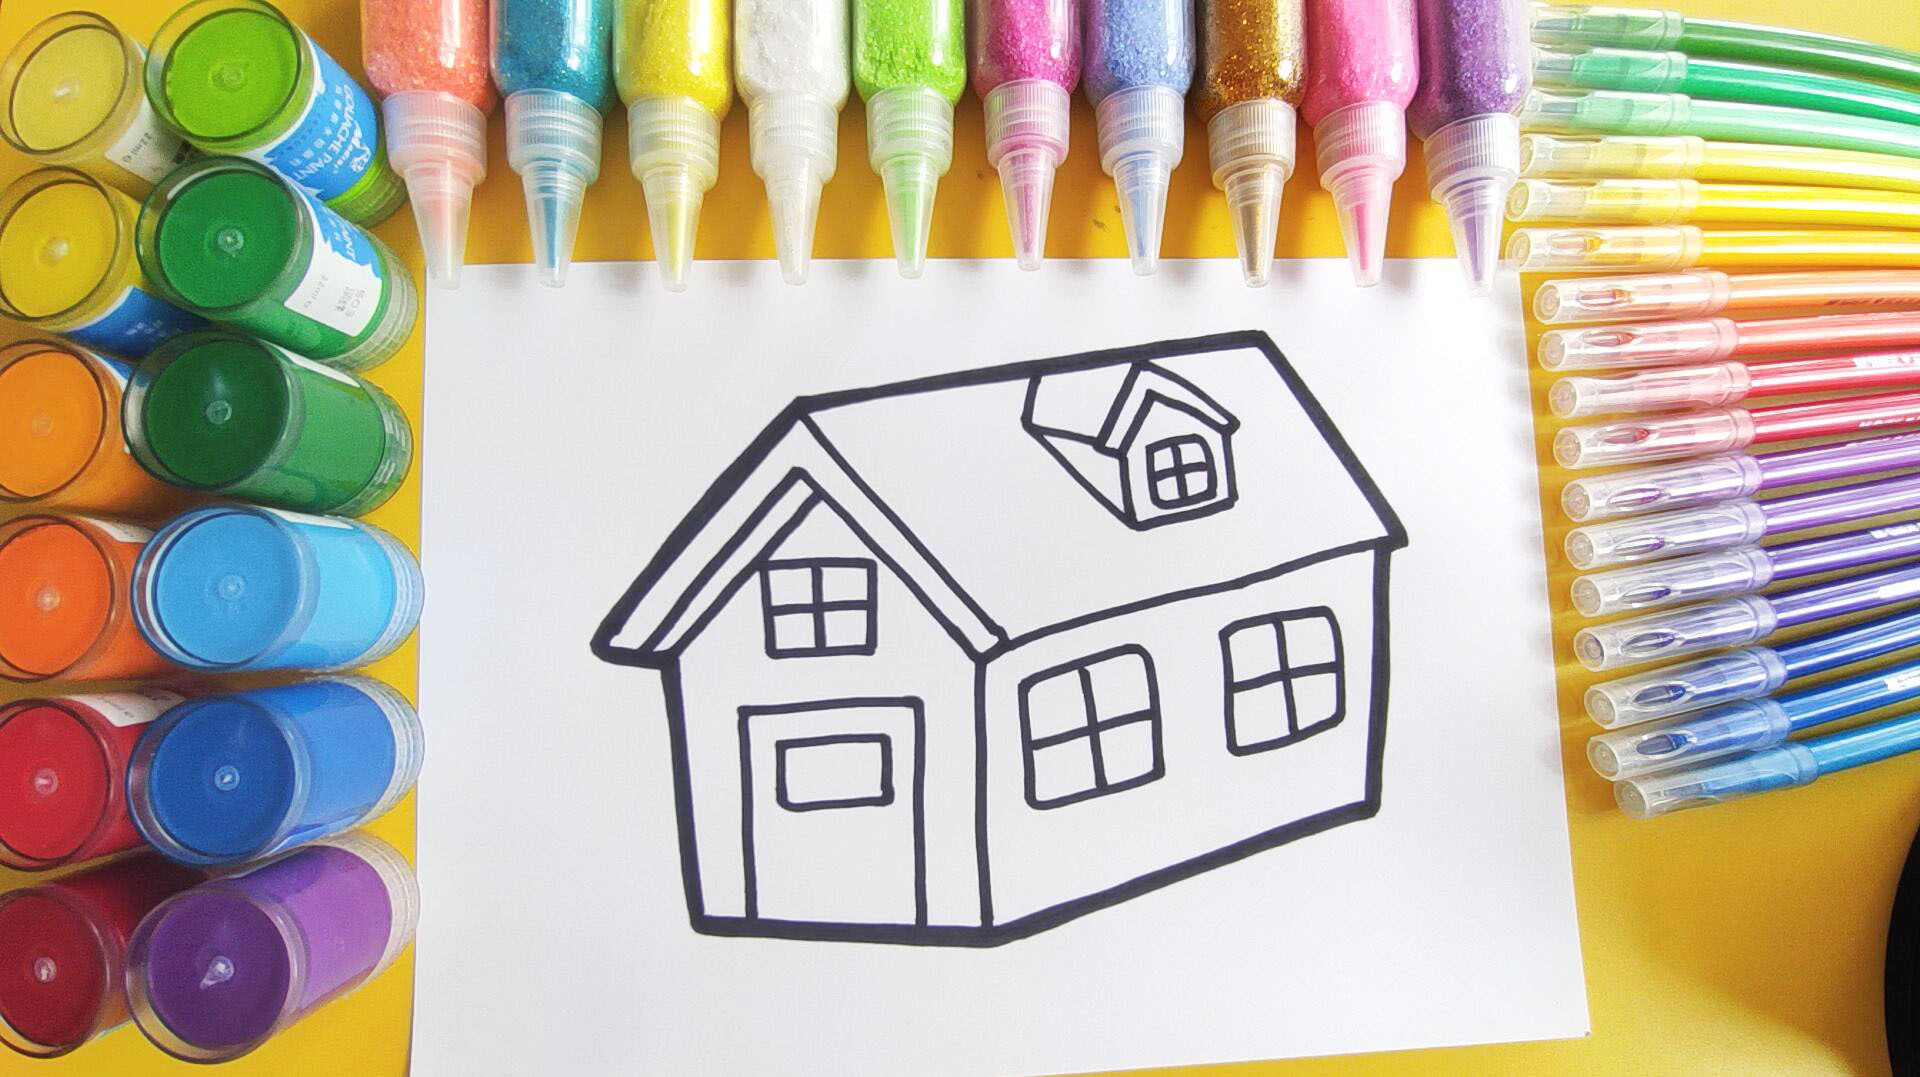 儿童简笔画教程,画一座绿色屋顶的房子,3-12岁小朋友学习画画